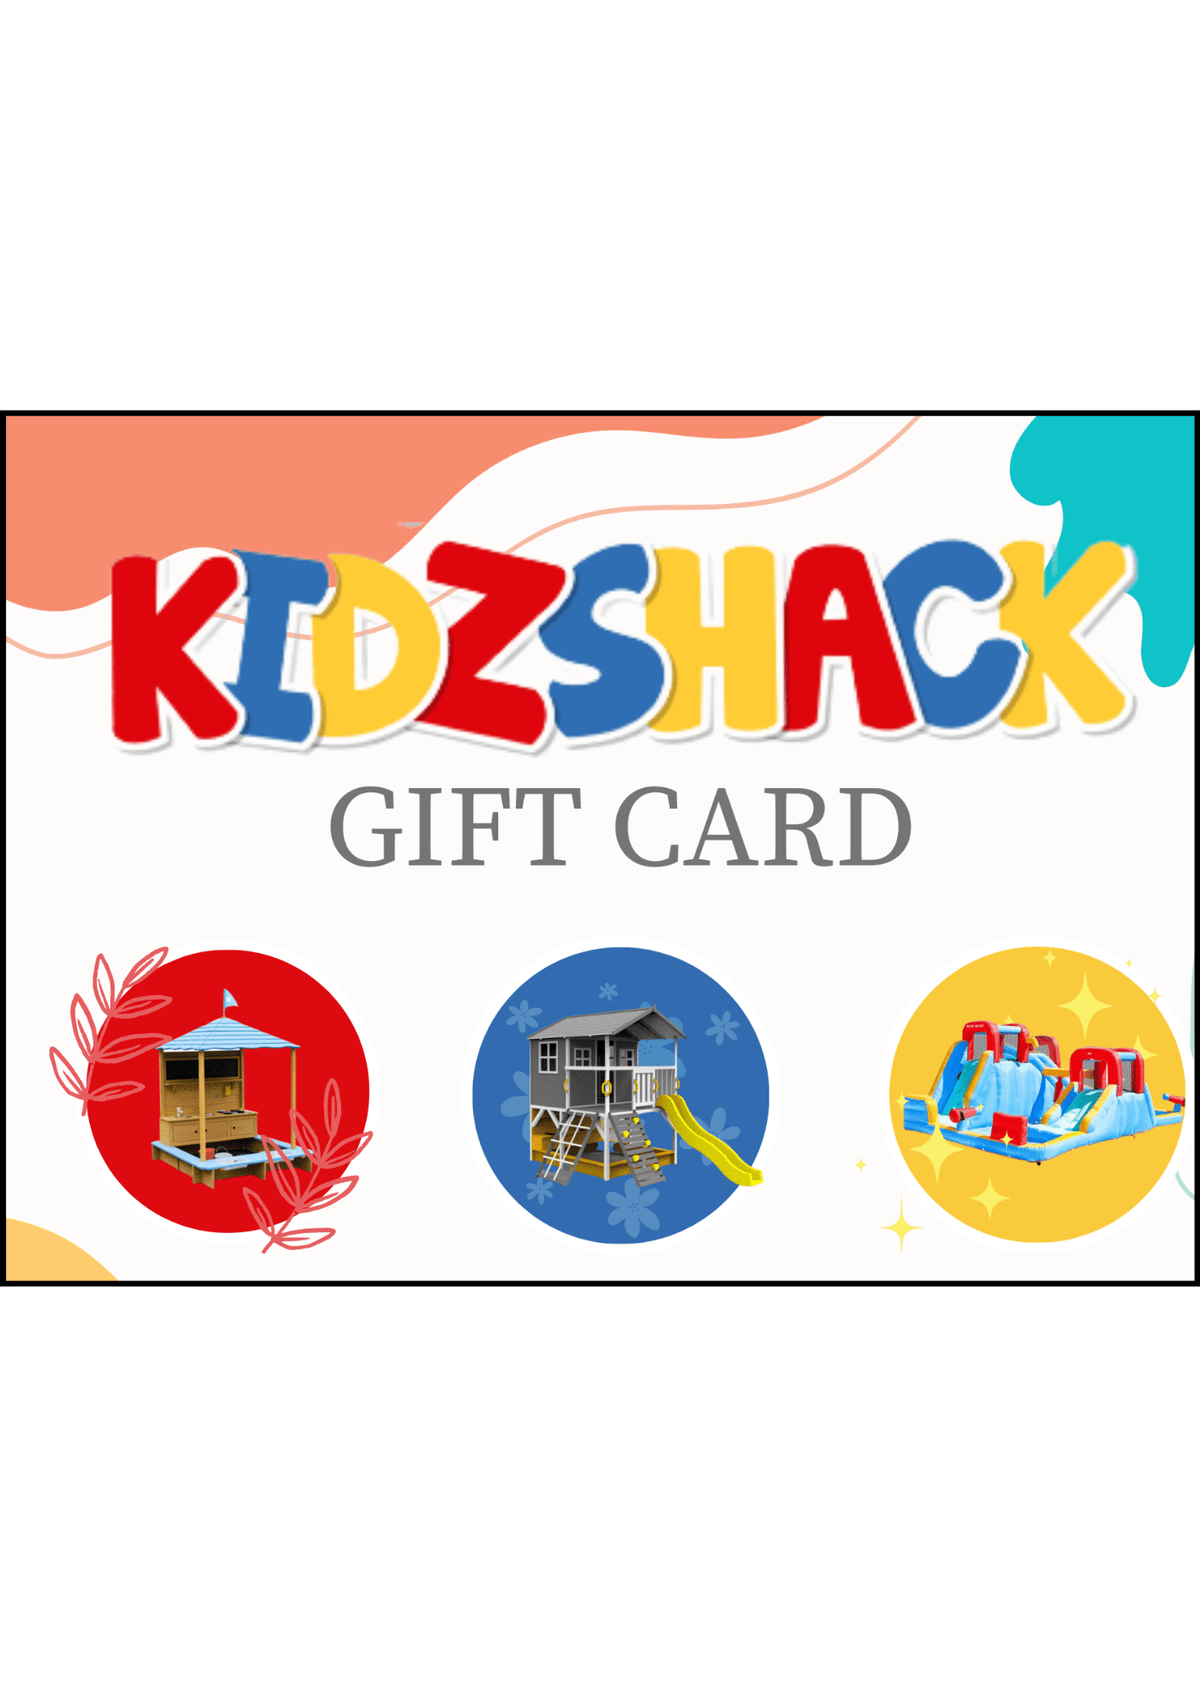 KIDZSHACK GIFT CARDS